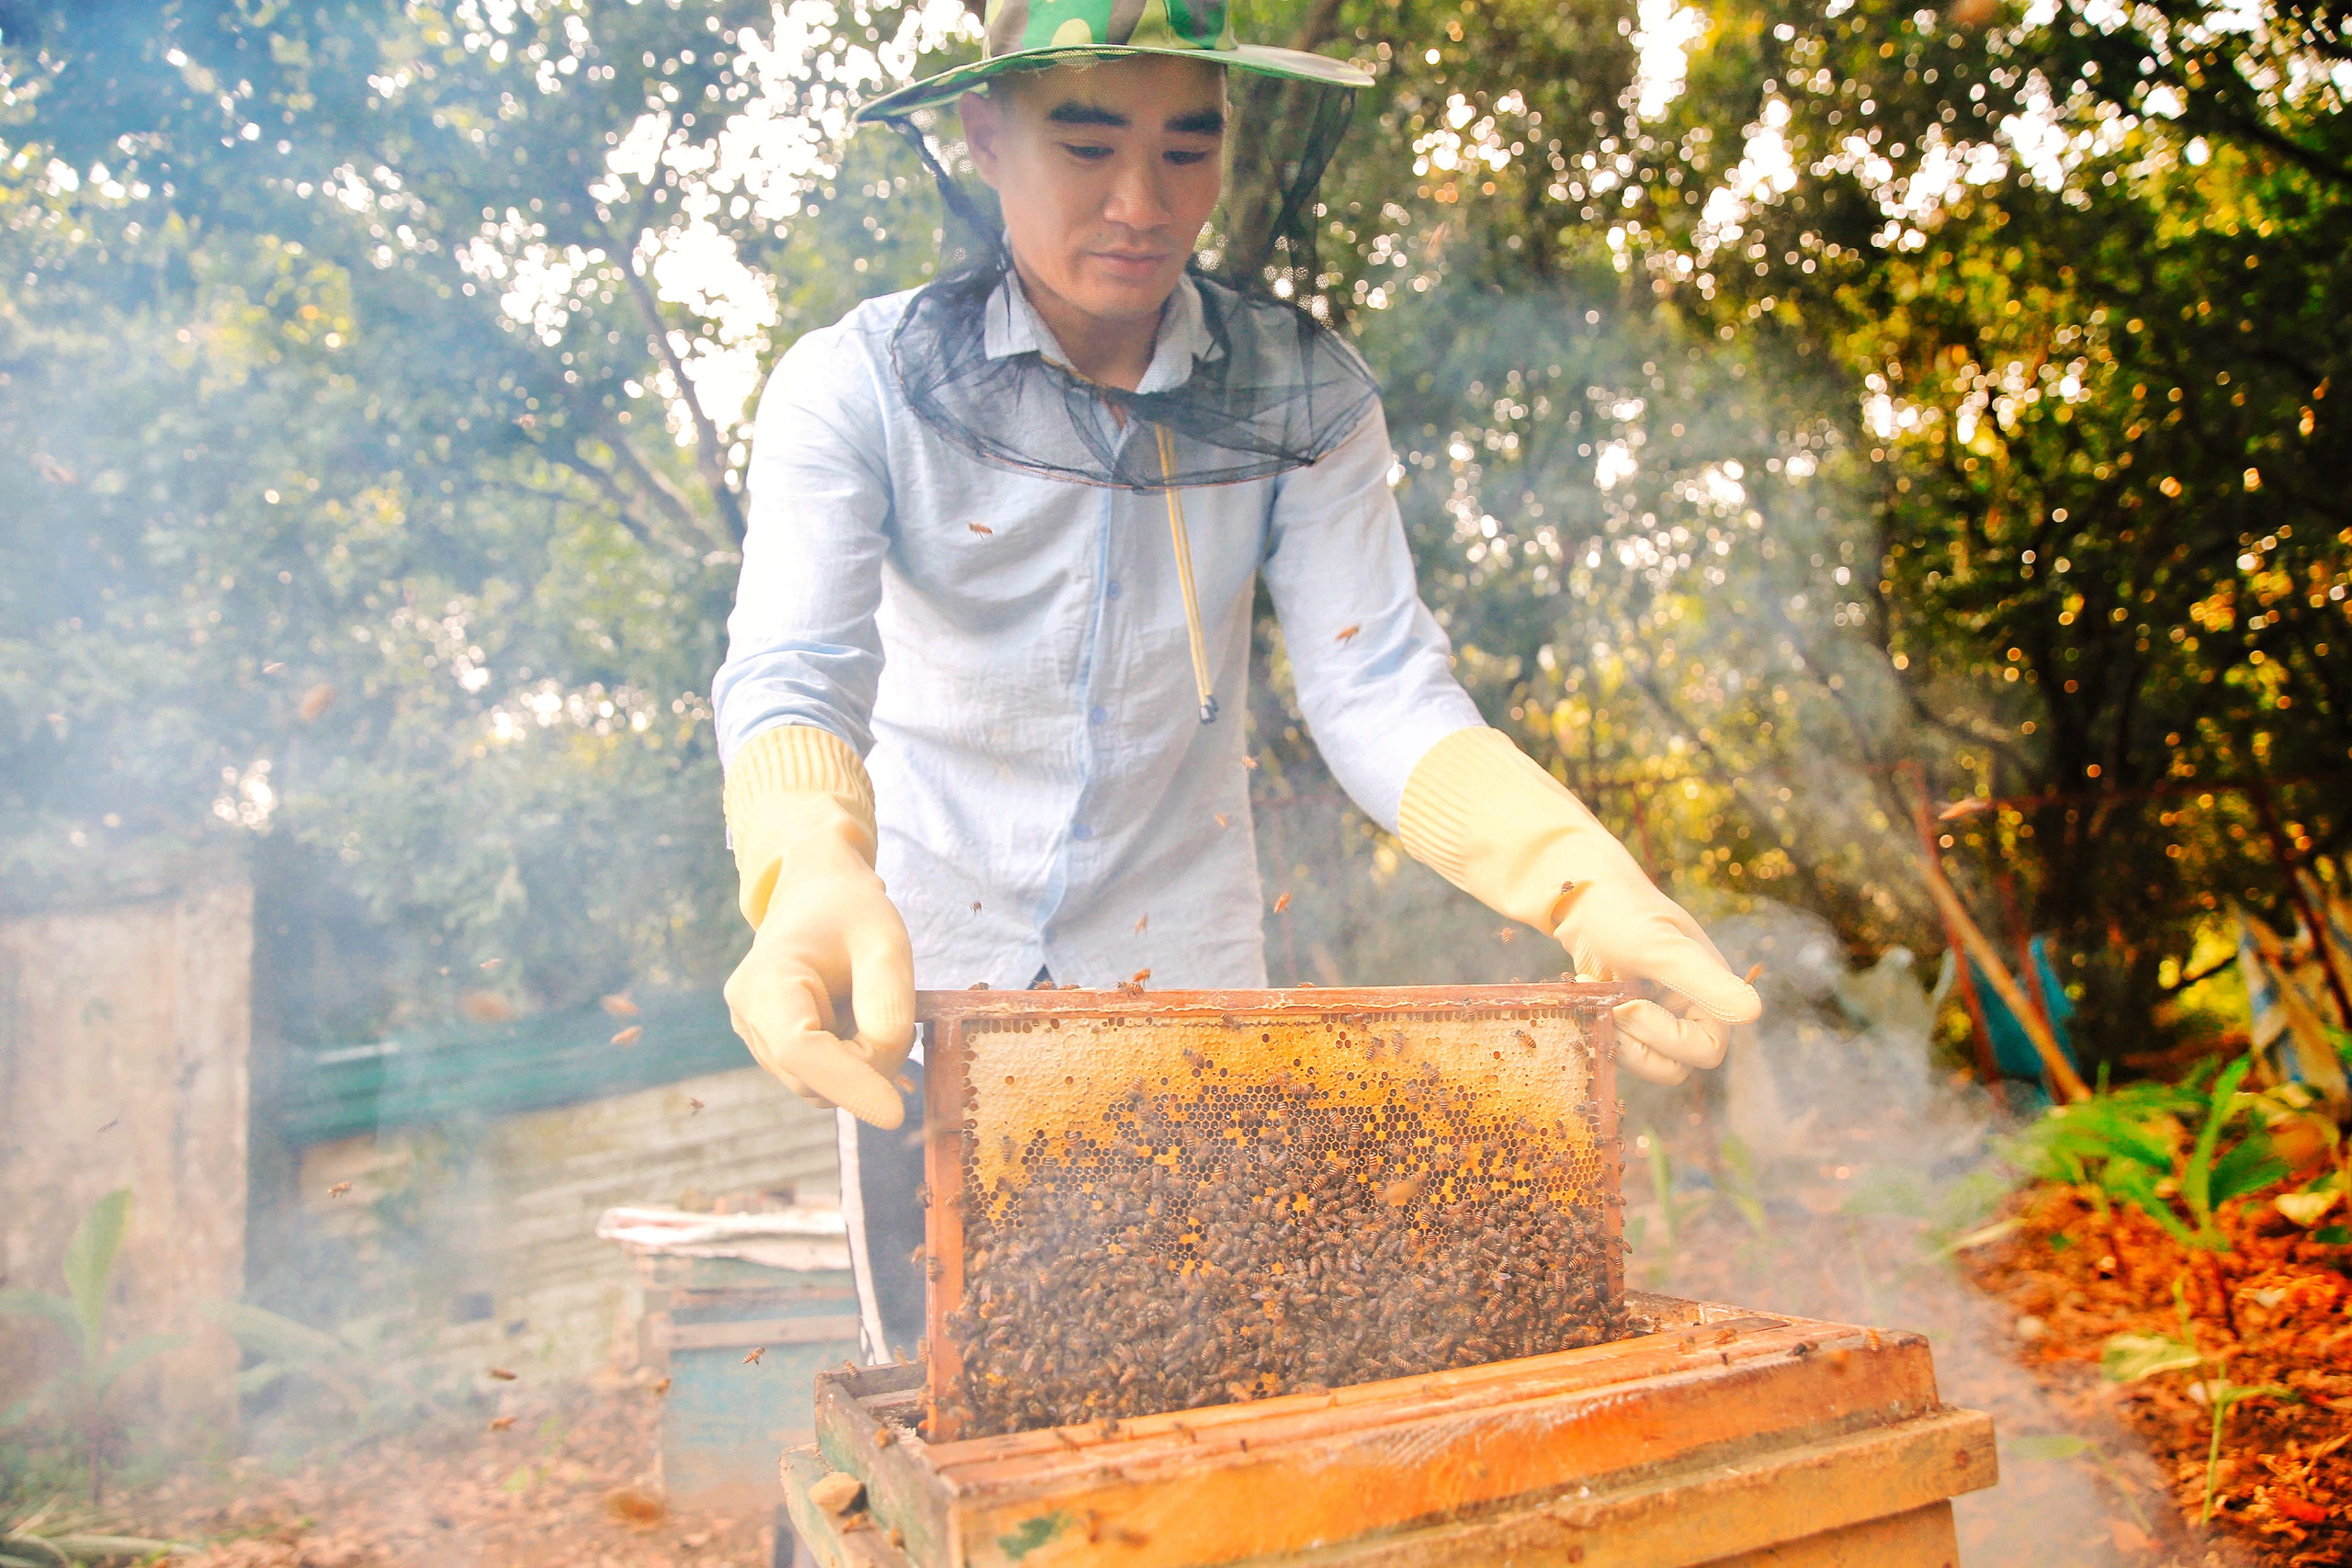 Đến &quot;thủ phủ mật ong&quot; giữa mùa thu hoạch, gặp người đàn ông đã dành cả tuổi xuân đảm nhiệm công việc giữ gìn đàn ong giống quốc gia - Ảnh 6.